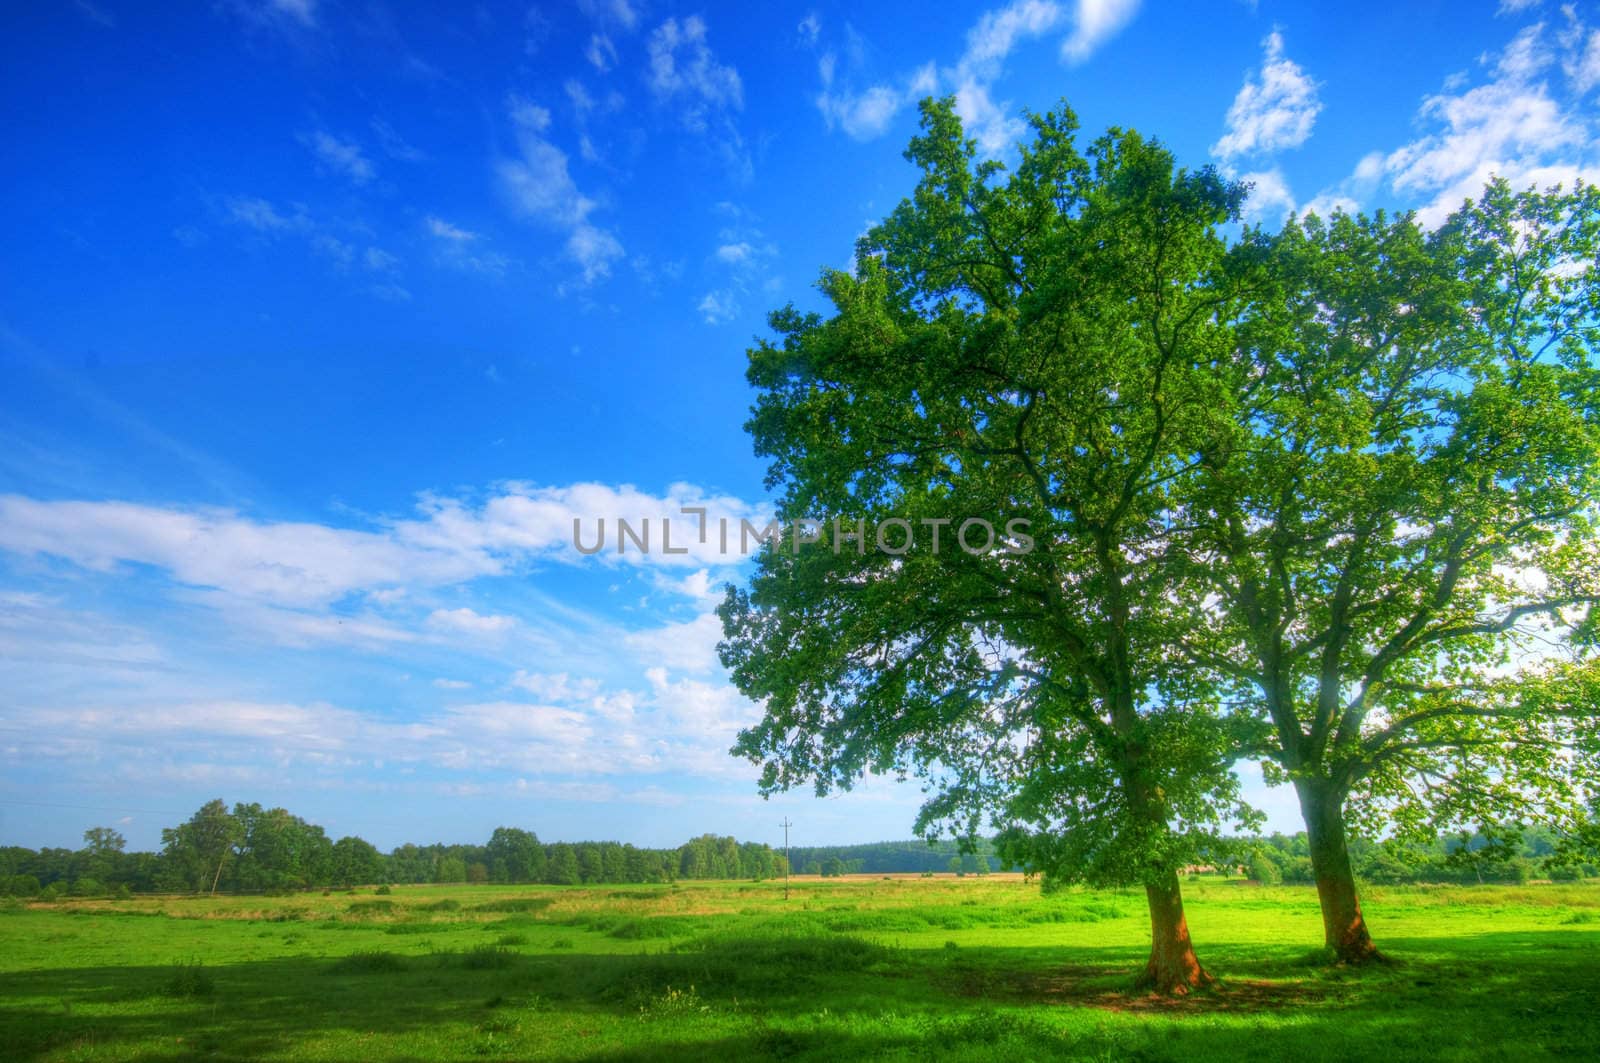 Tree on green summer field